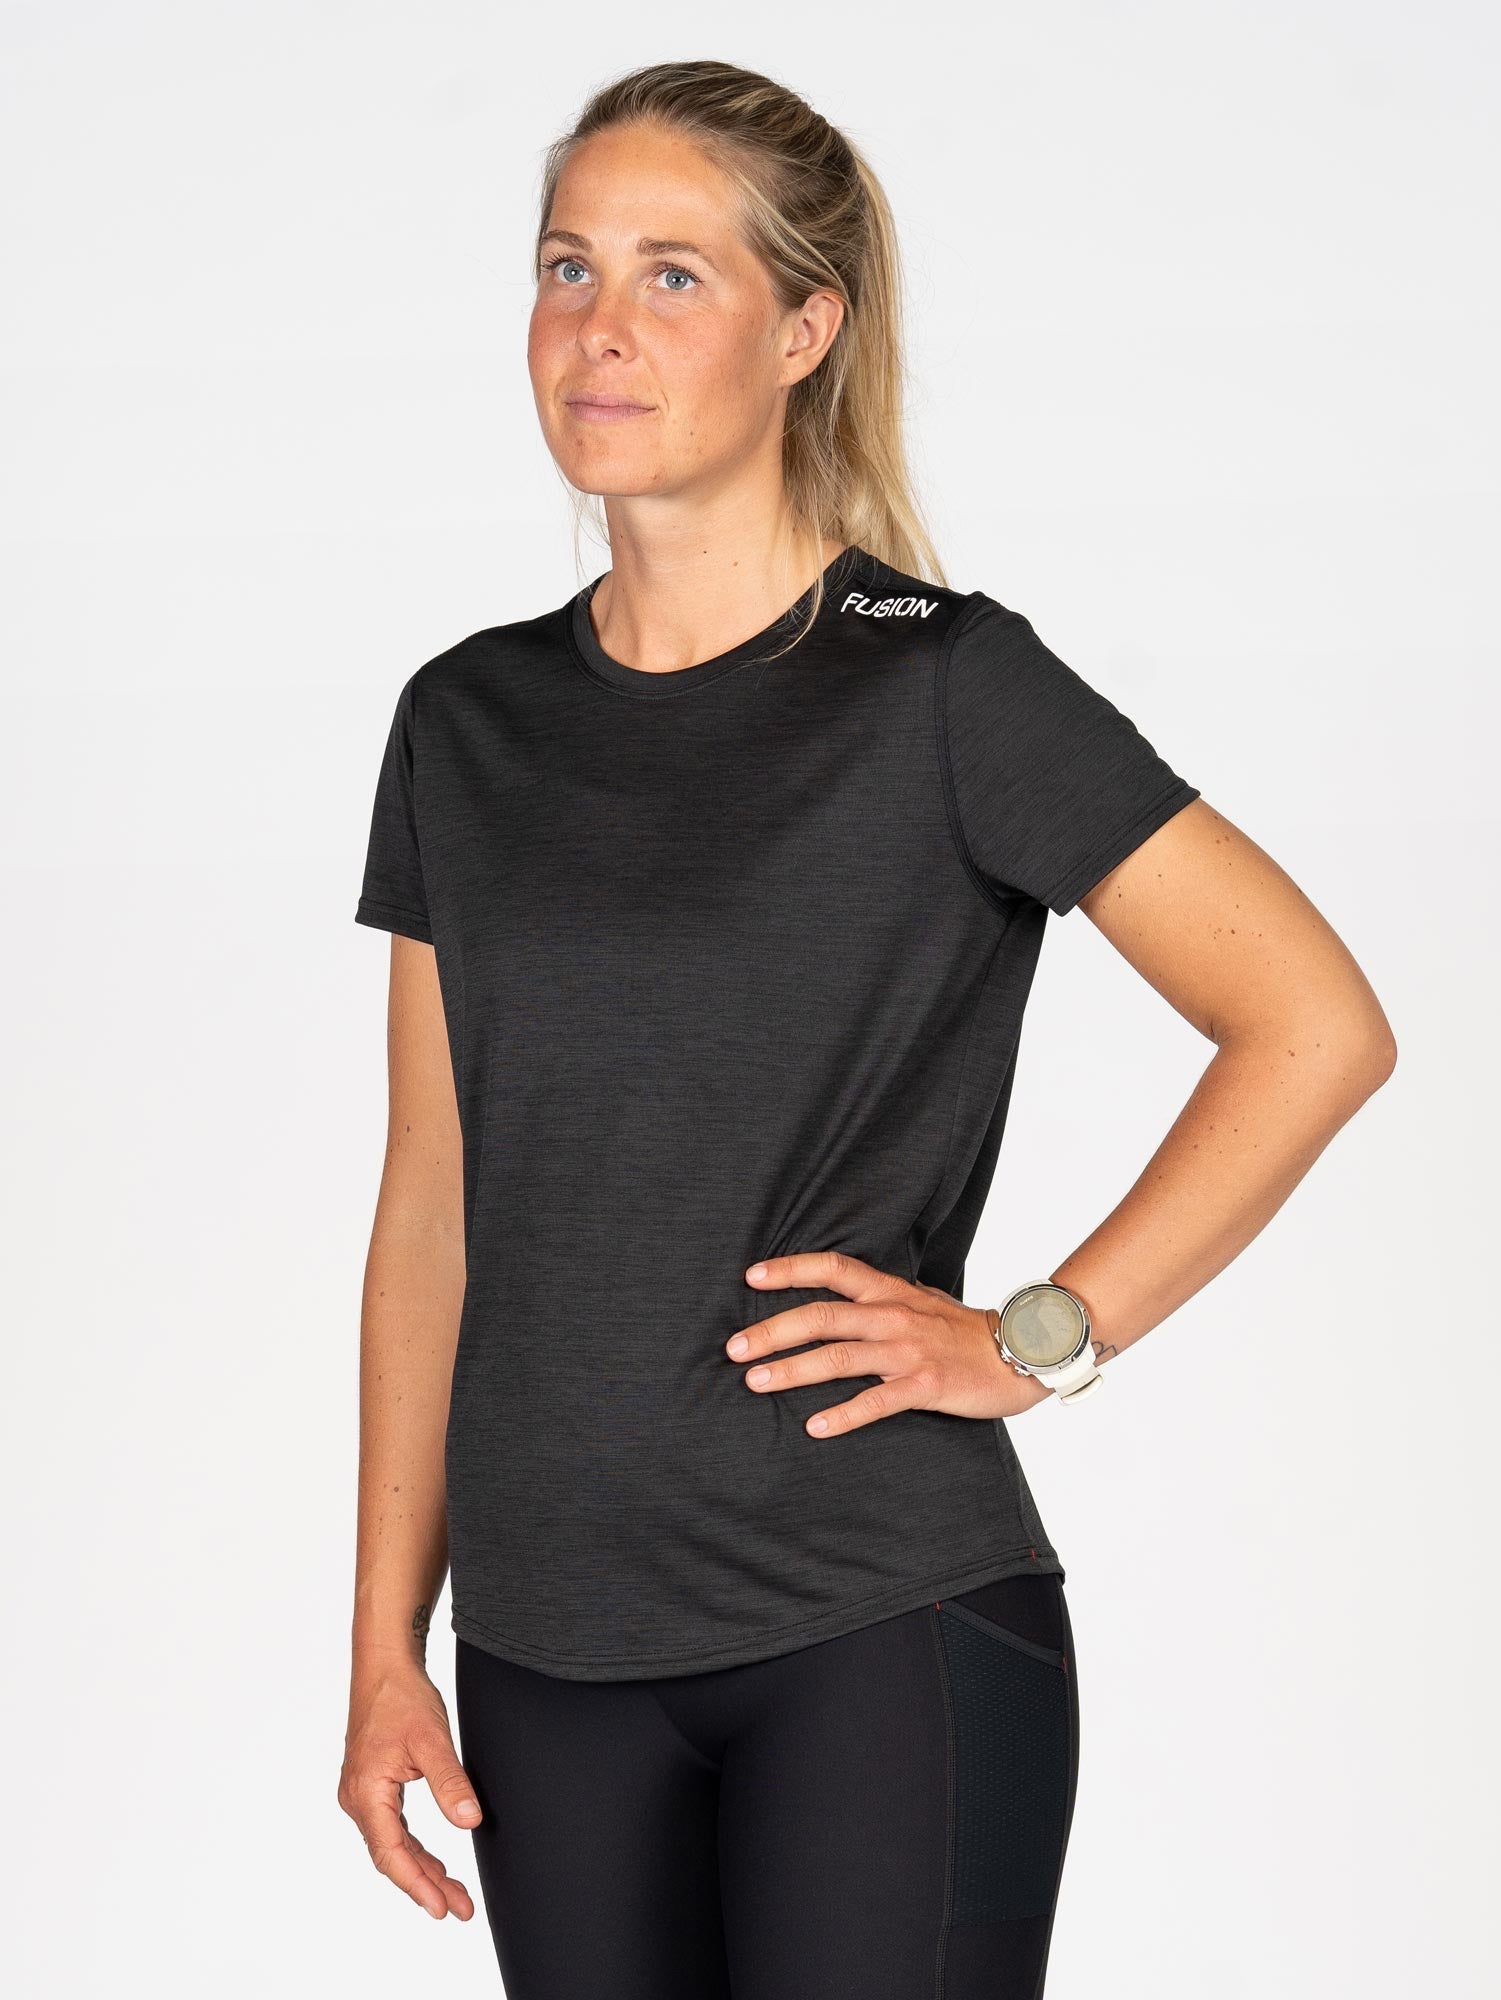 Hørsholm Tri Womens C3 T-Shirt